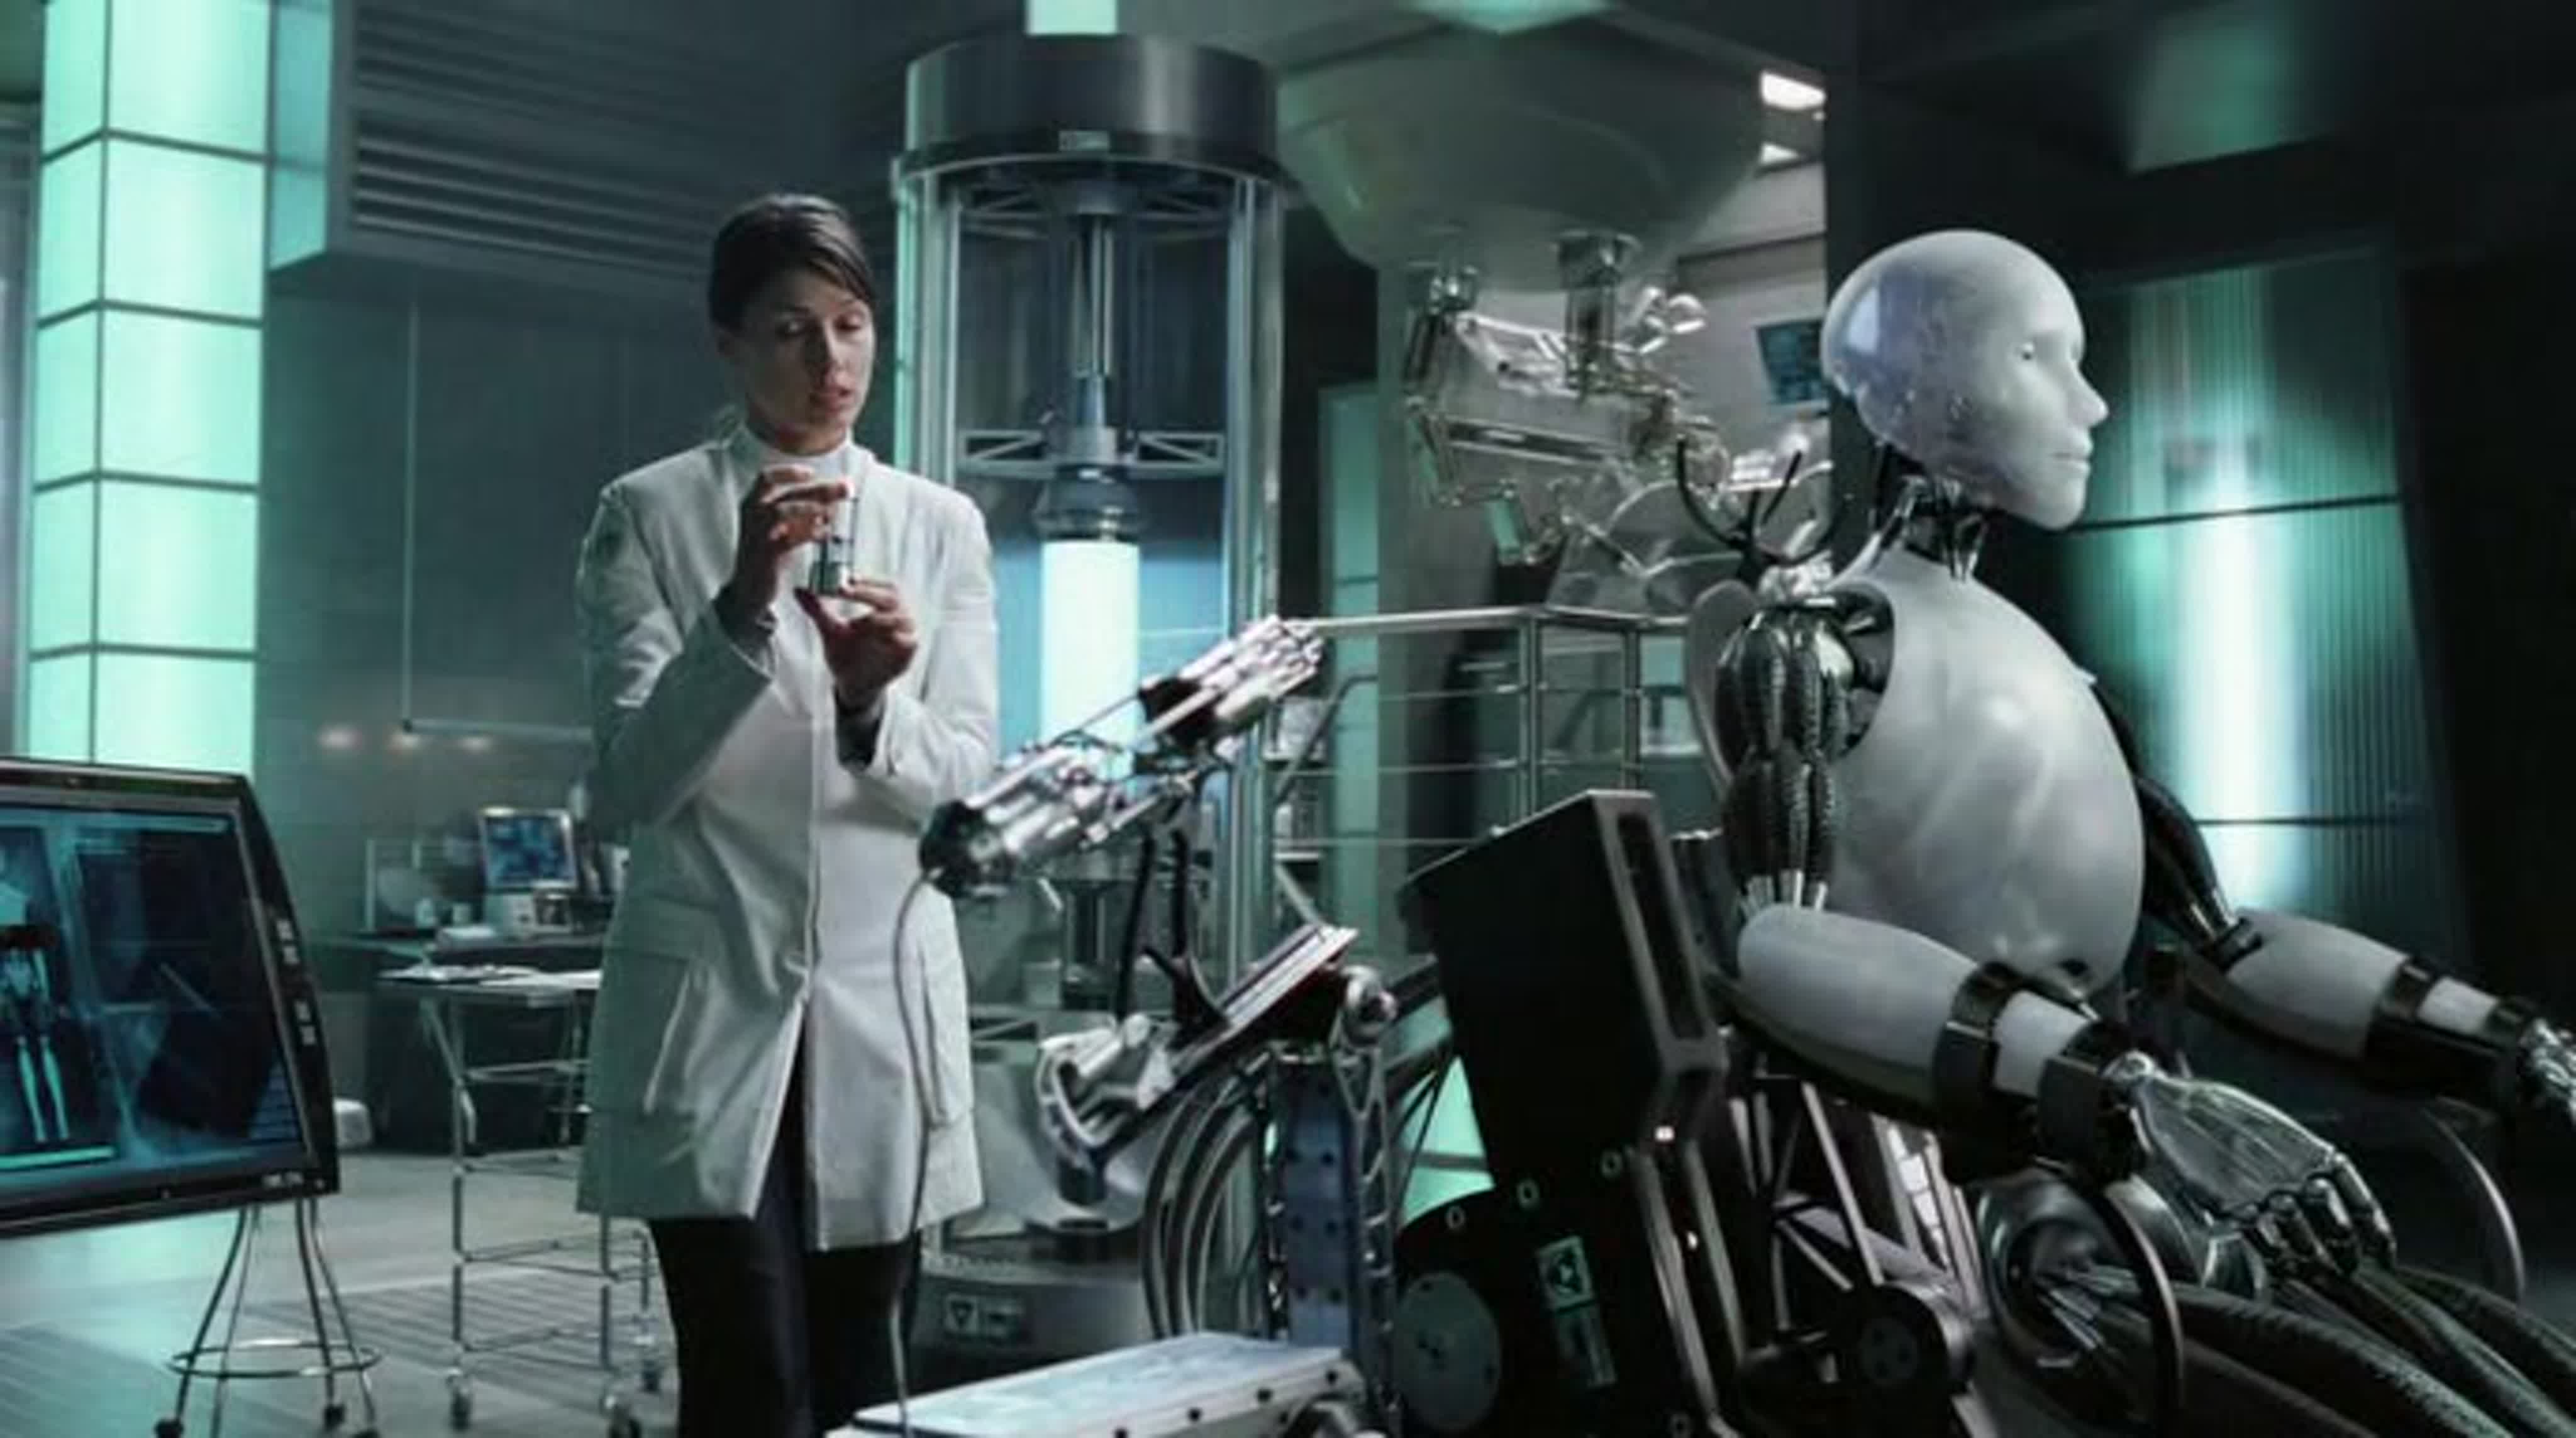 Я, робот / I, Robot (2004)